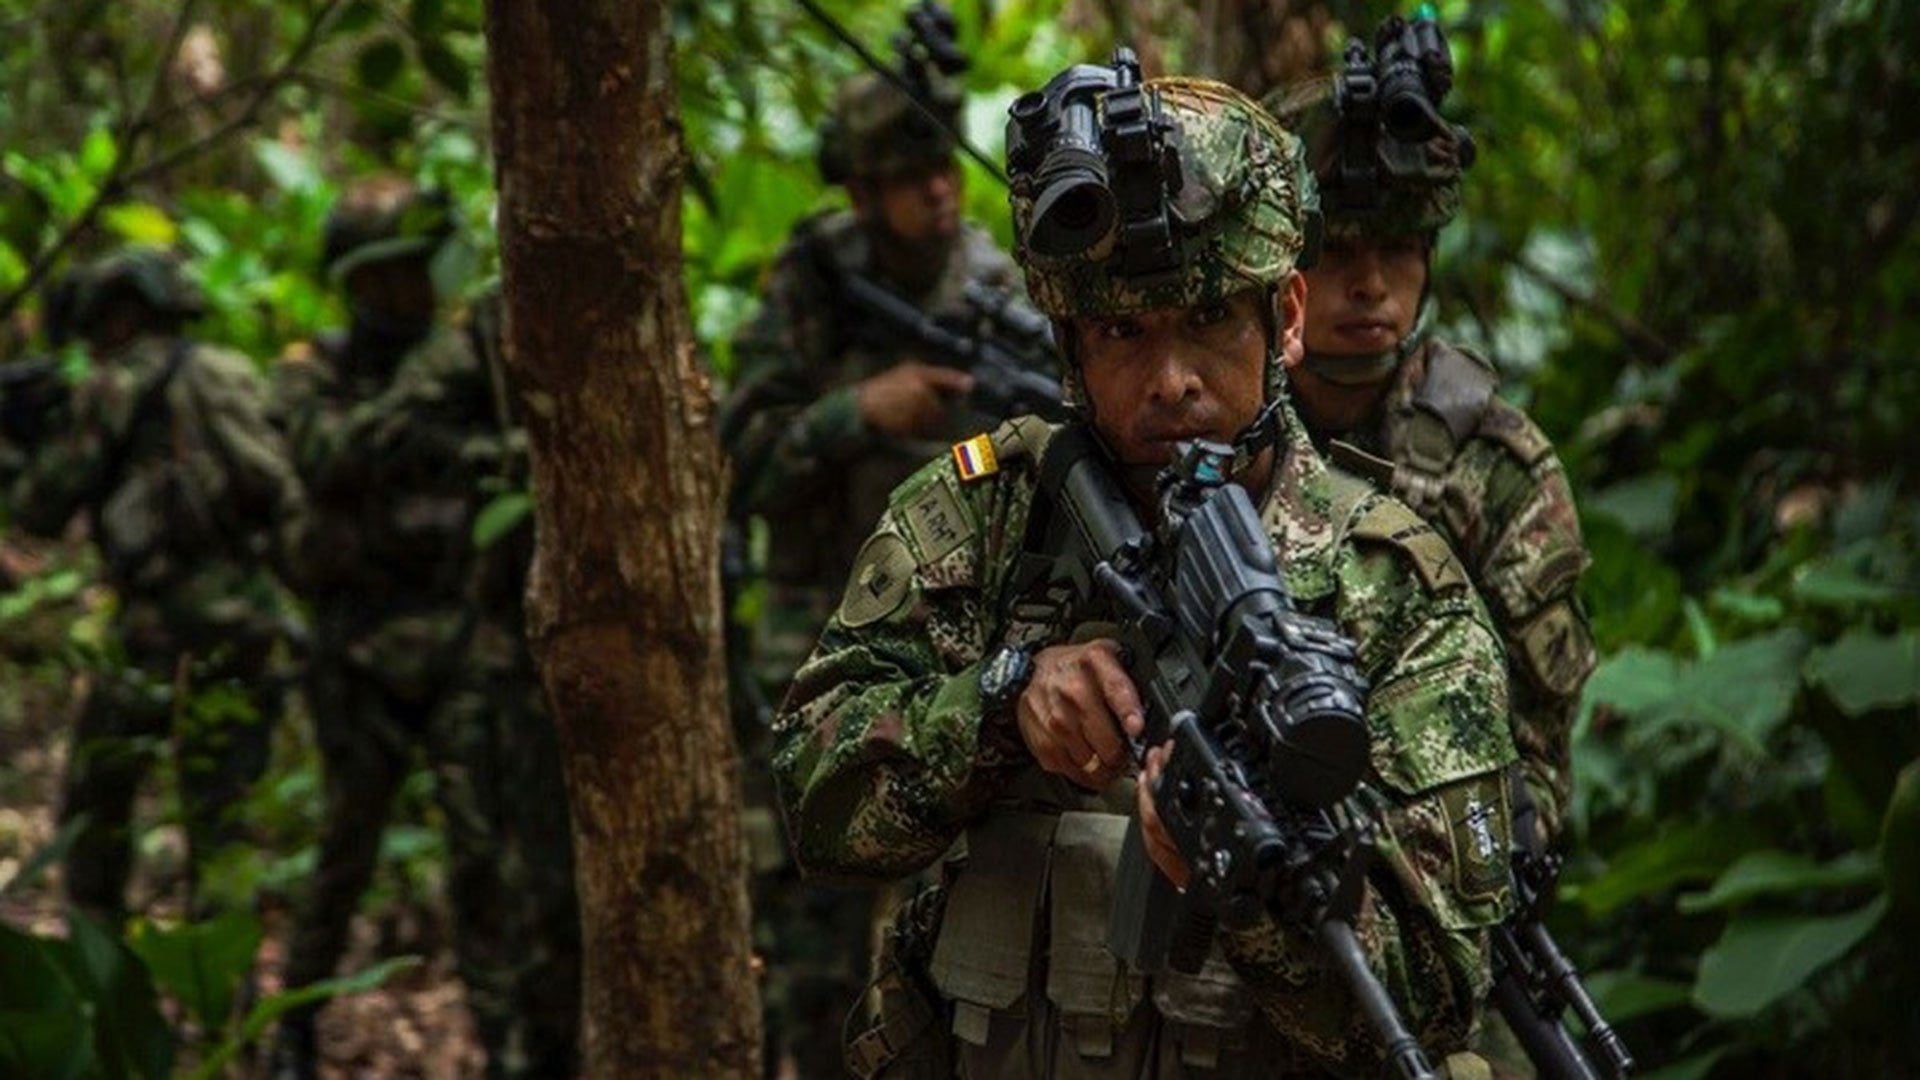 Gobernación del Valle acompañó la incorporación de más de 600 soldados regulares que apoyarán la seguridad en el departamento